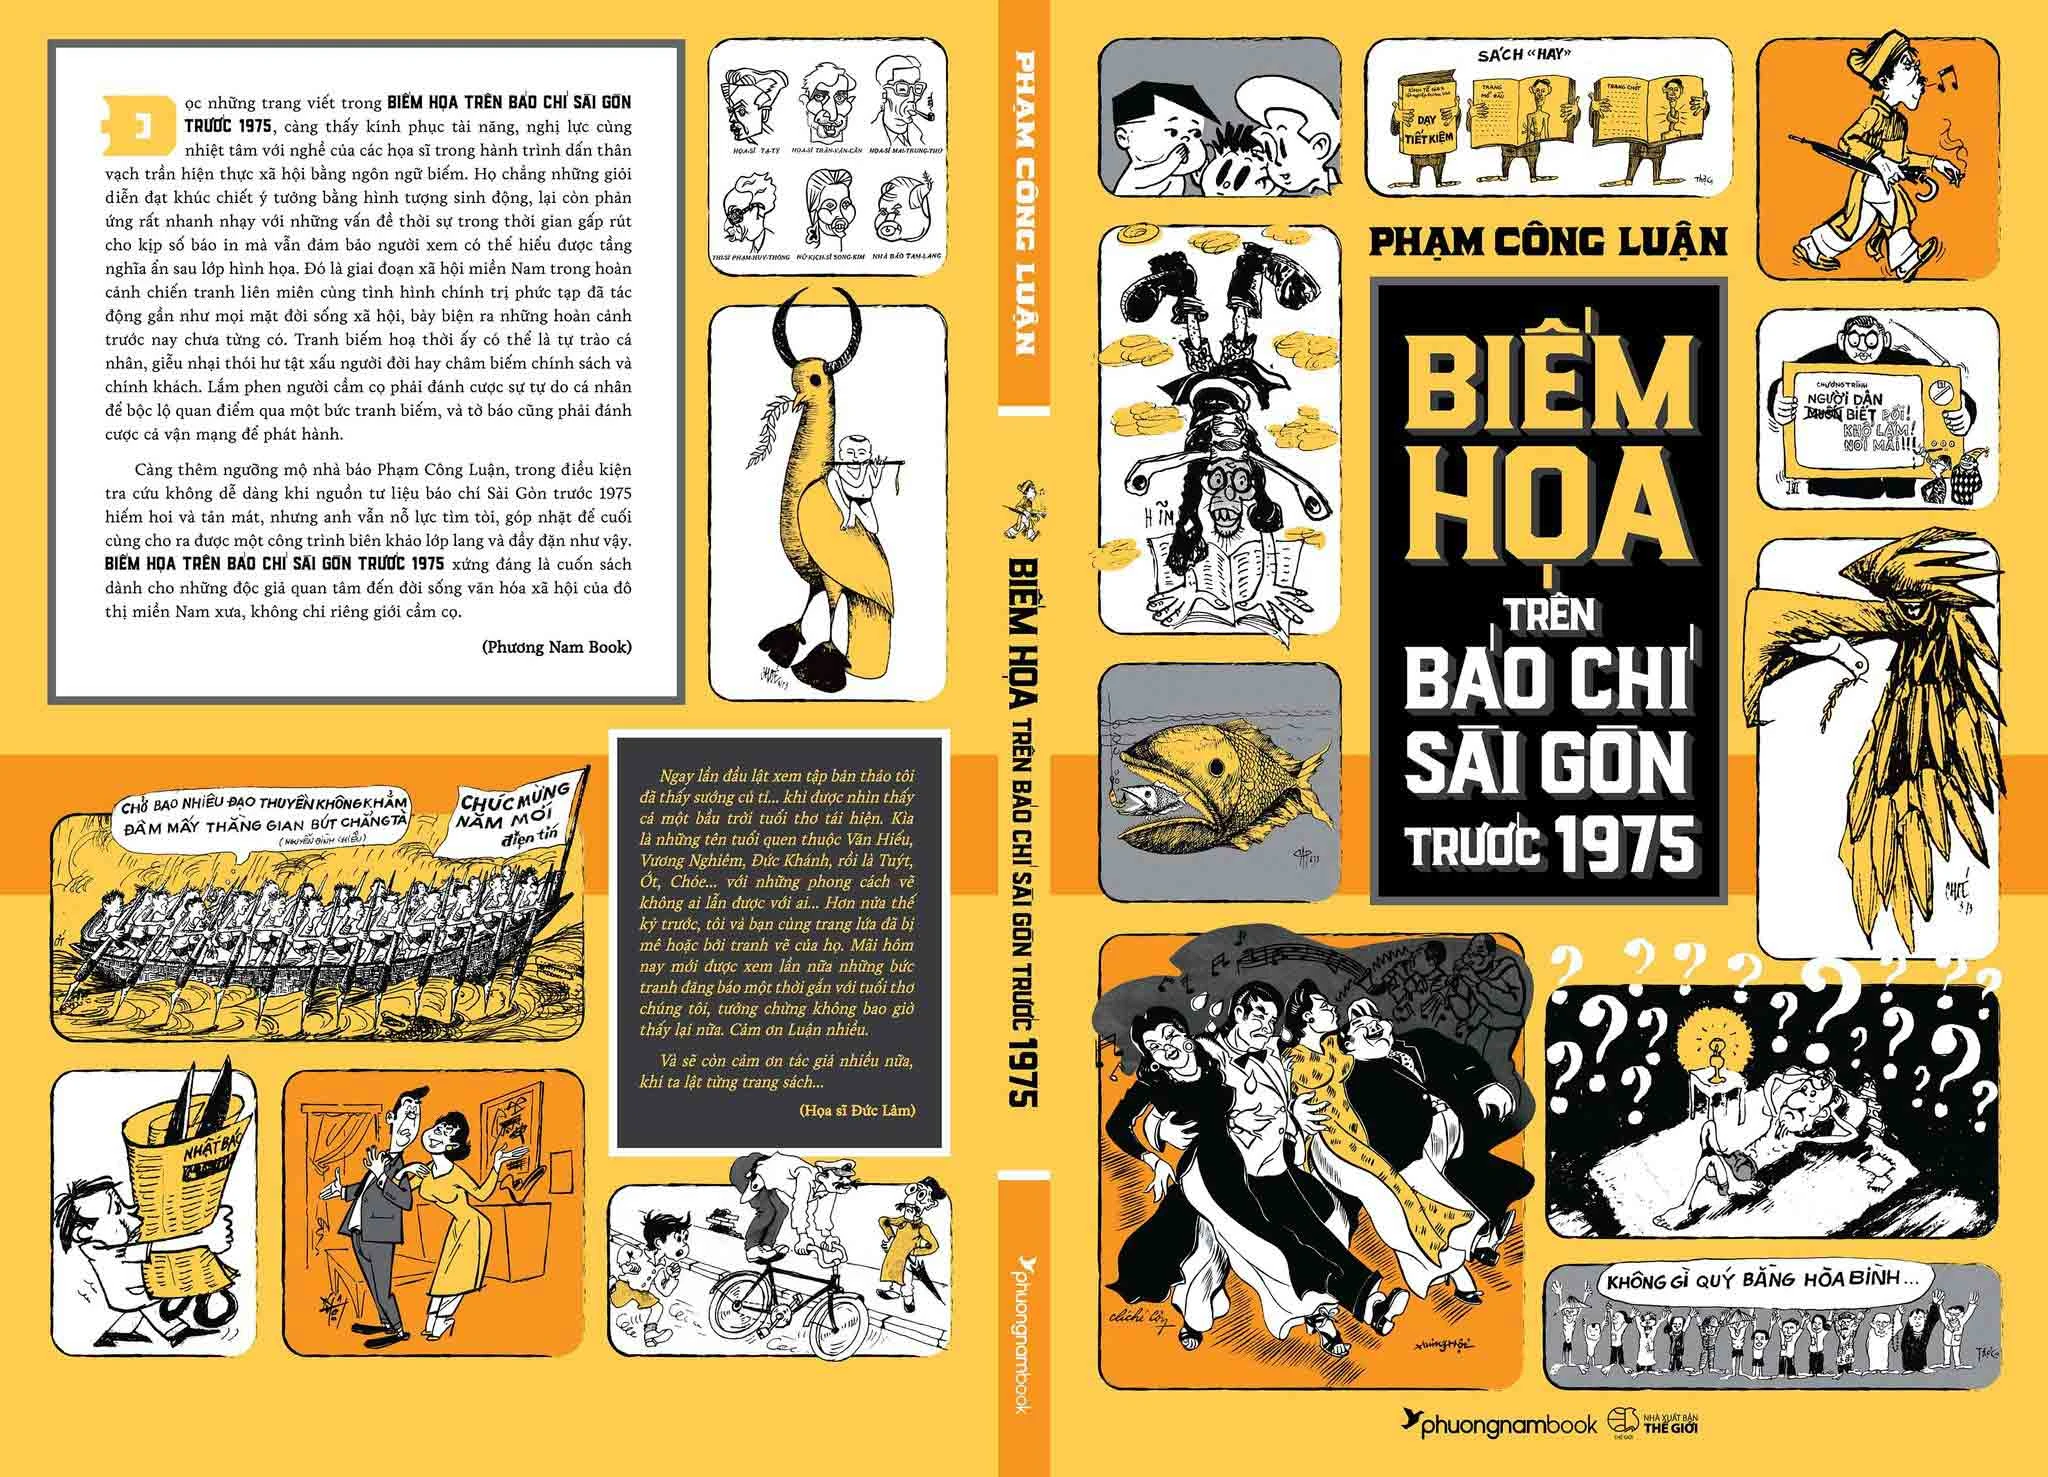 Cuốn sách khảo cứu công phu về biếm họa trên báo chí Sài Gòn trước 1975